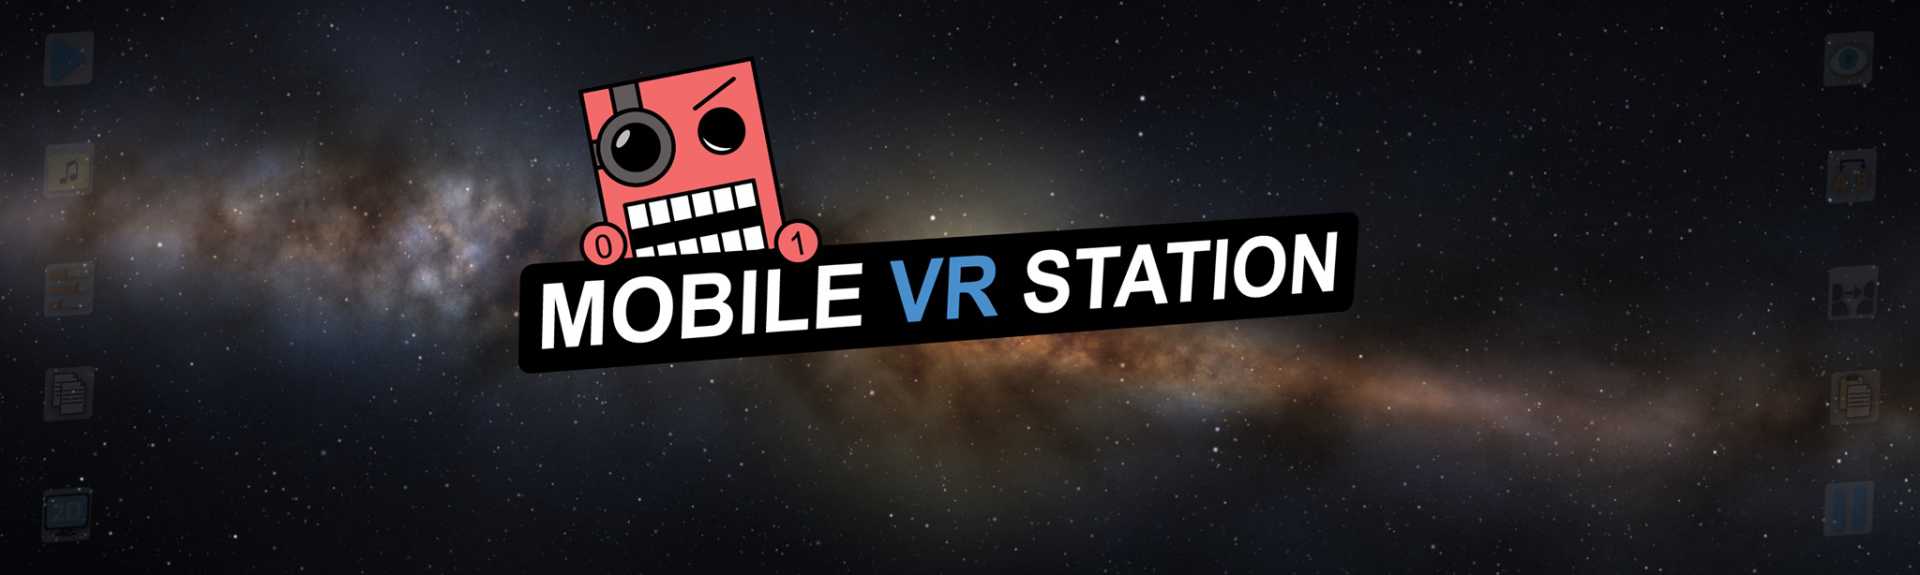 Mobile VR Station